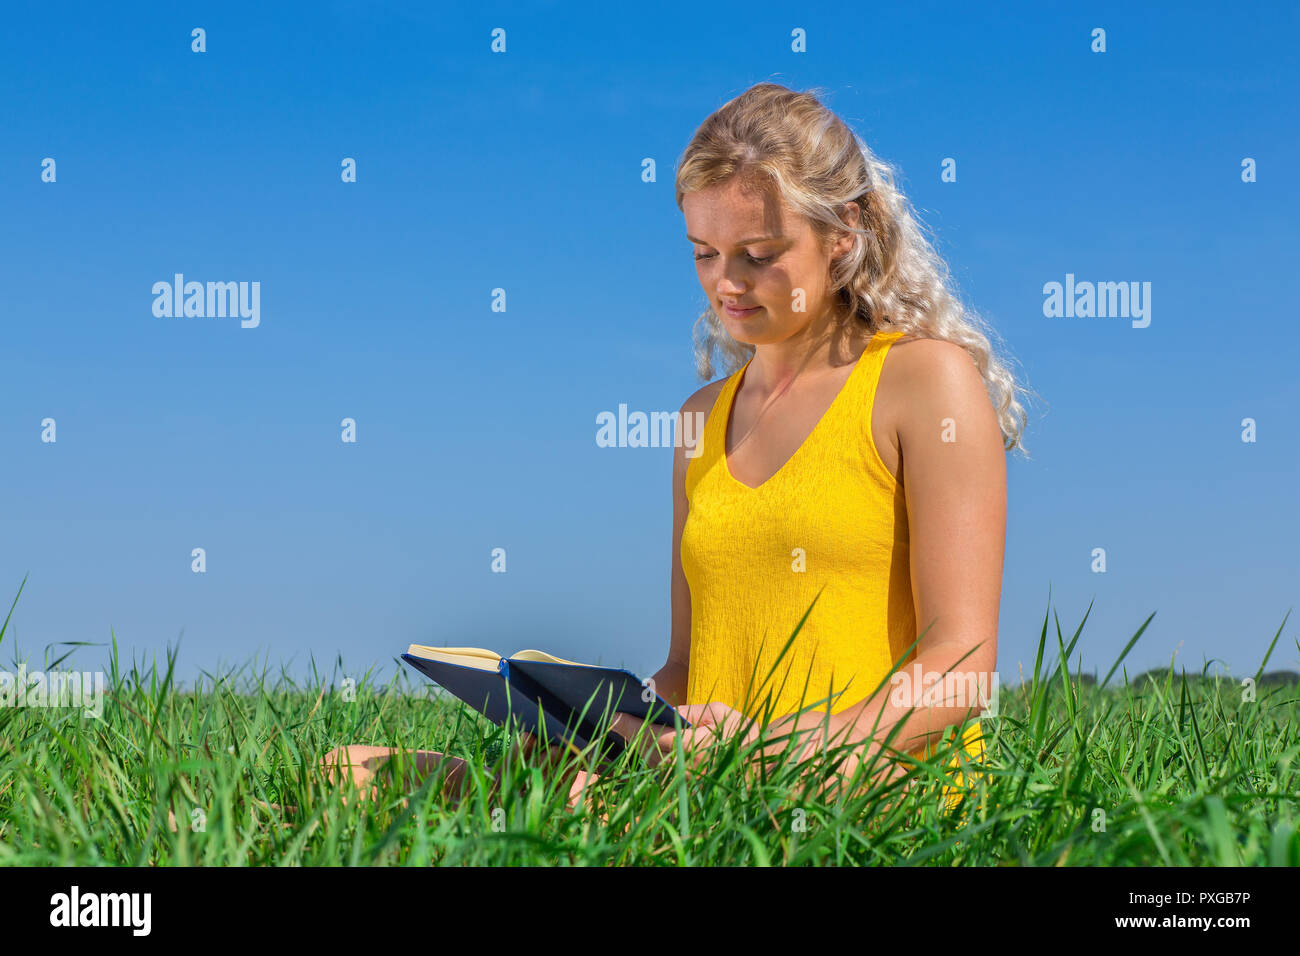 Junge blonde caucasian Woman Reading buchen Sie im Gras mit blauem Himmel Stockfoto